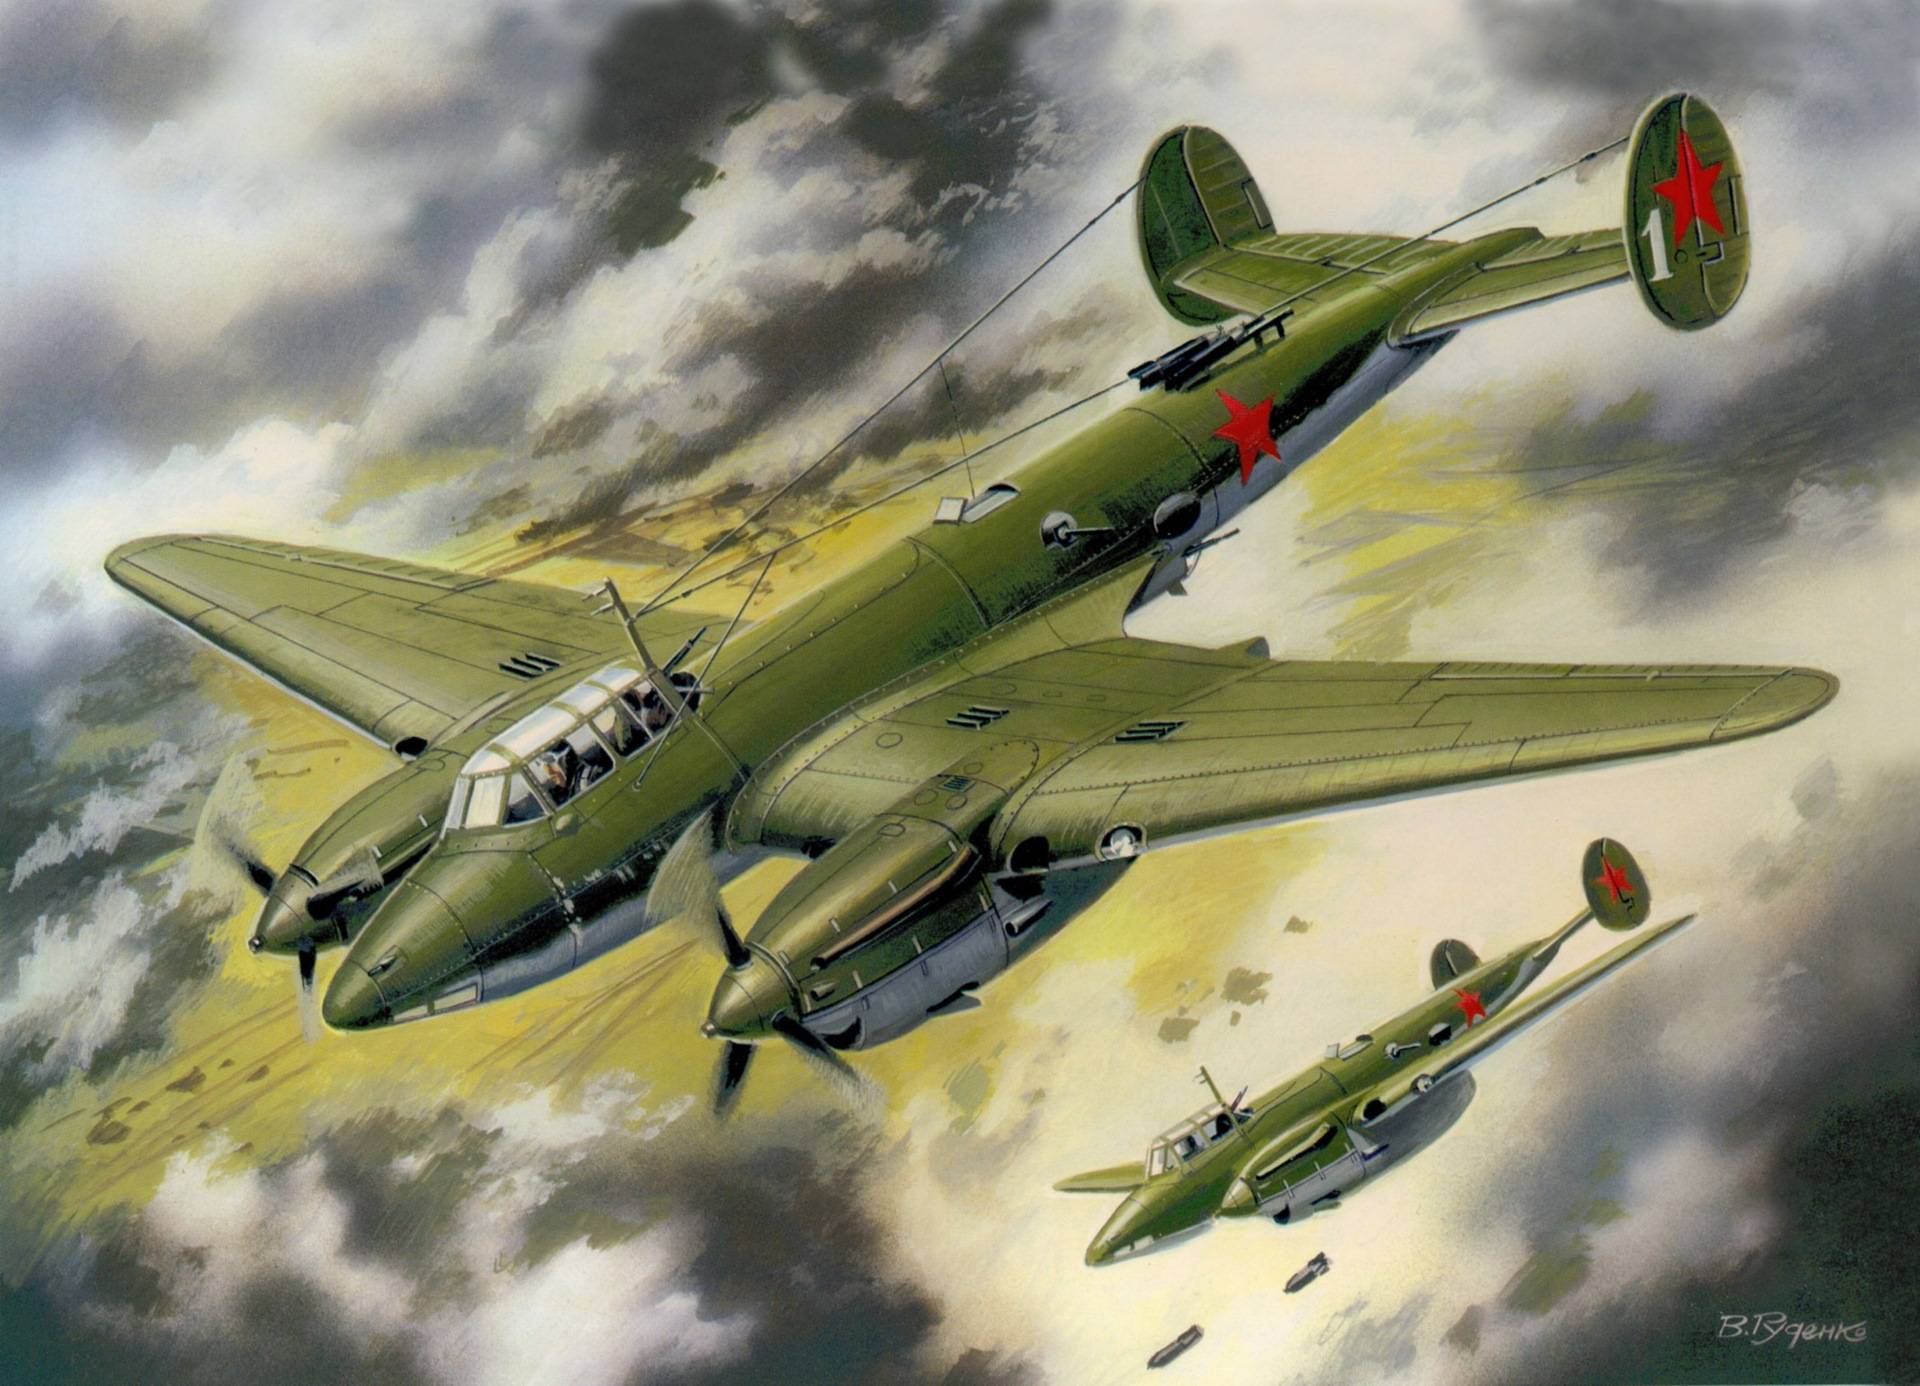 Германские самолеты времен второй мировой войны